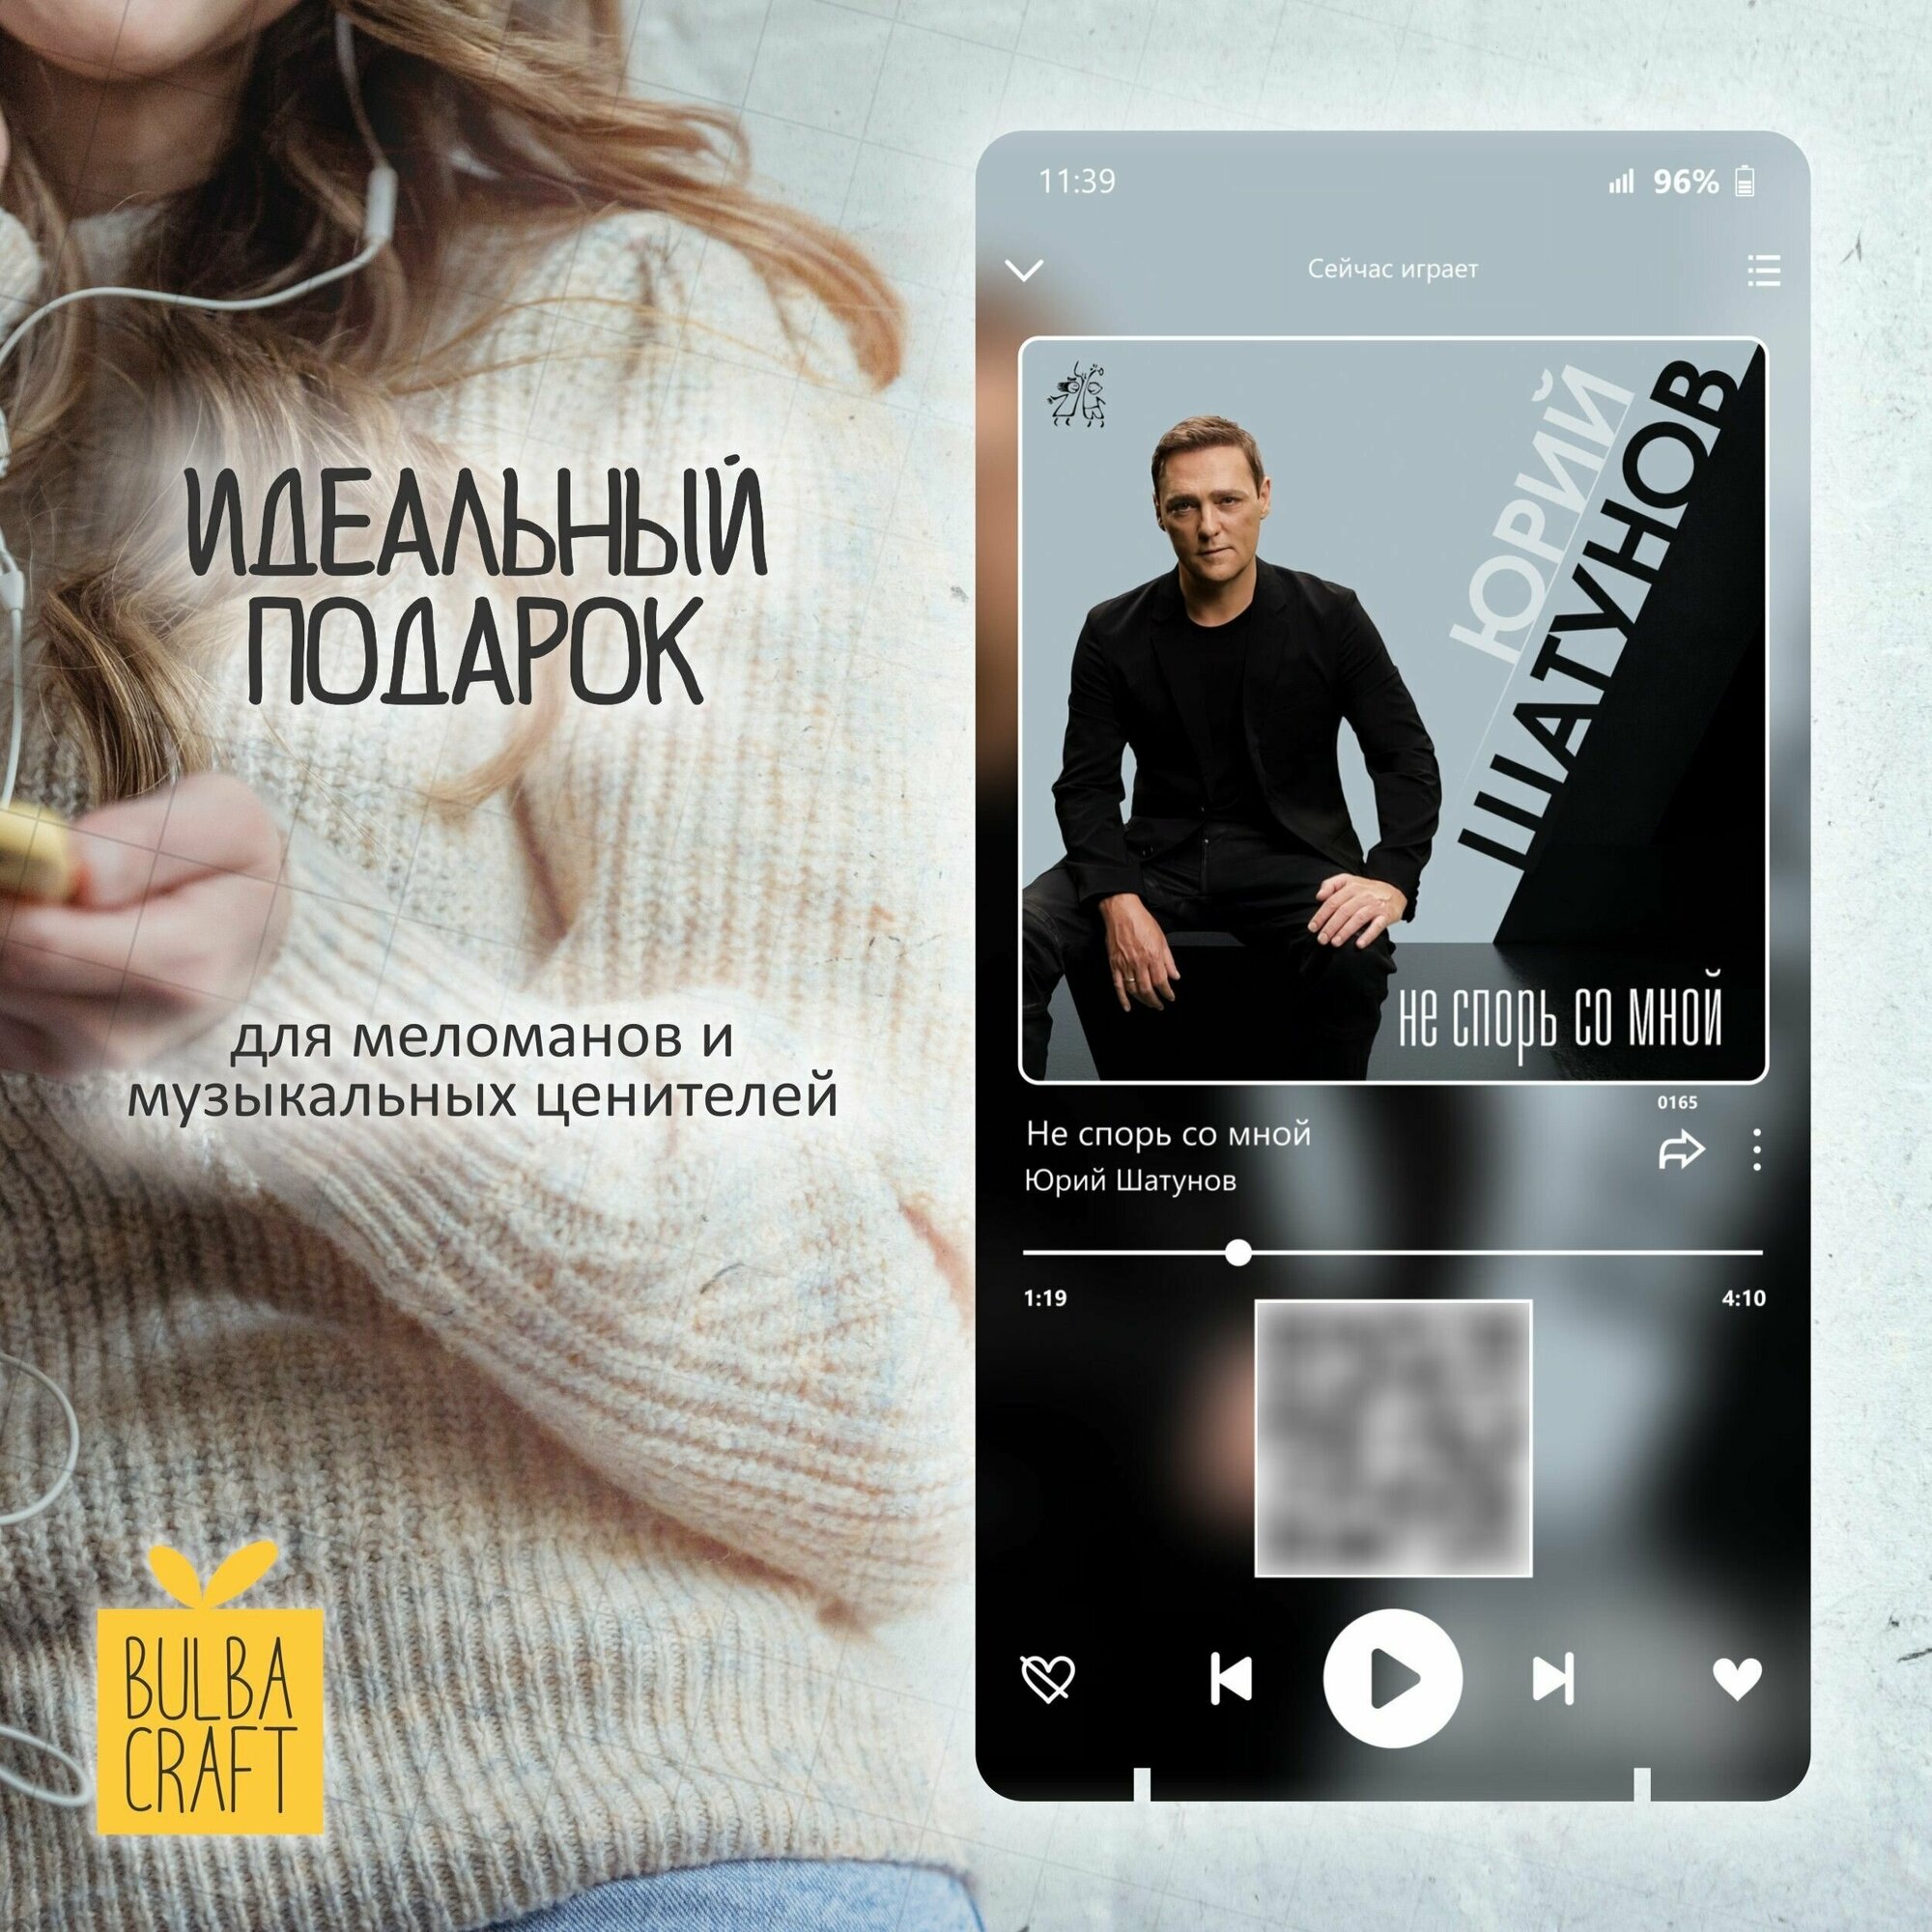 "Юрий Шатунов - Не спорь со мной" Spotify постер, музыкальная рамка, плакат, пластинка подарок Bulbacraft (10х20см)